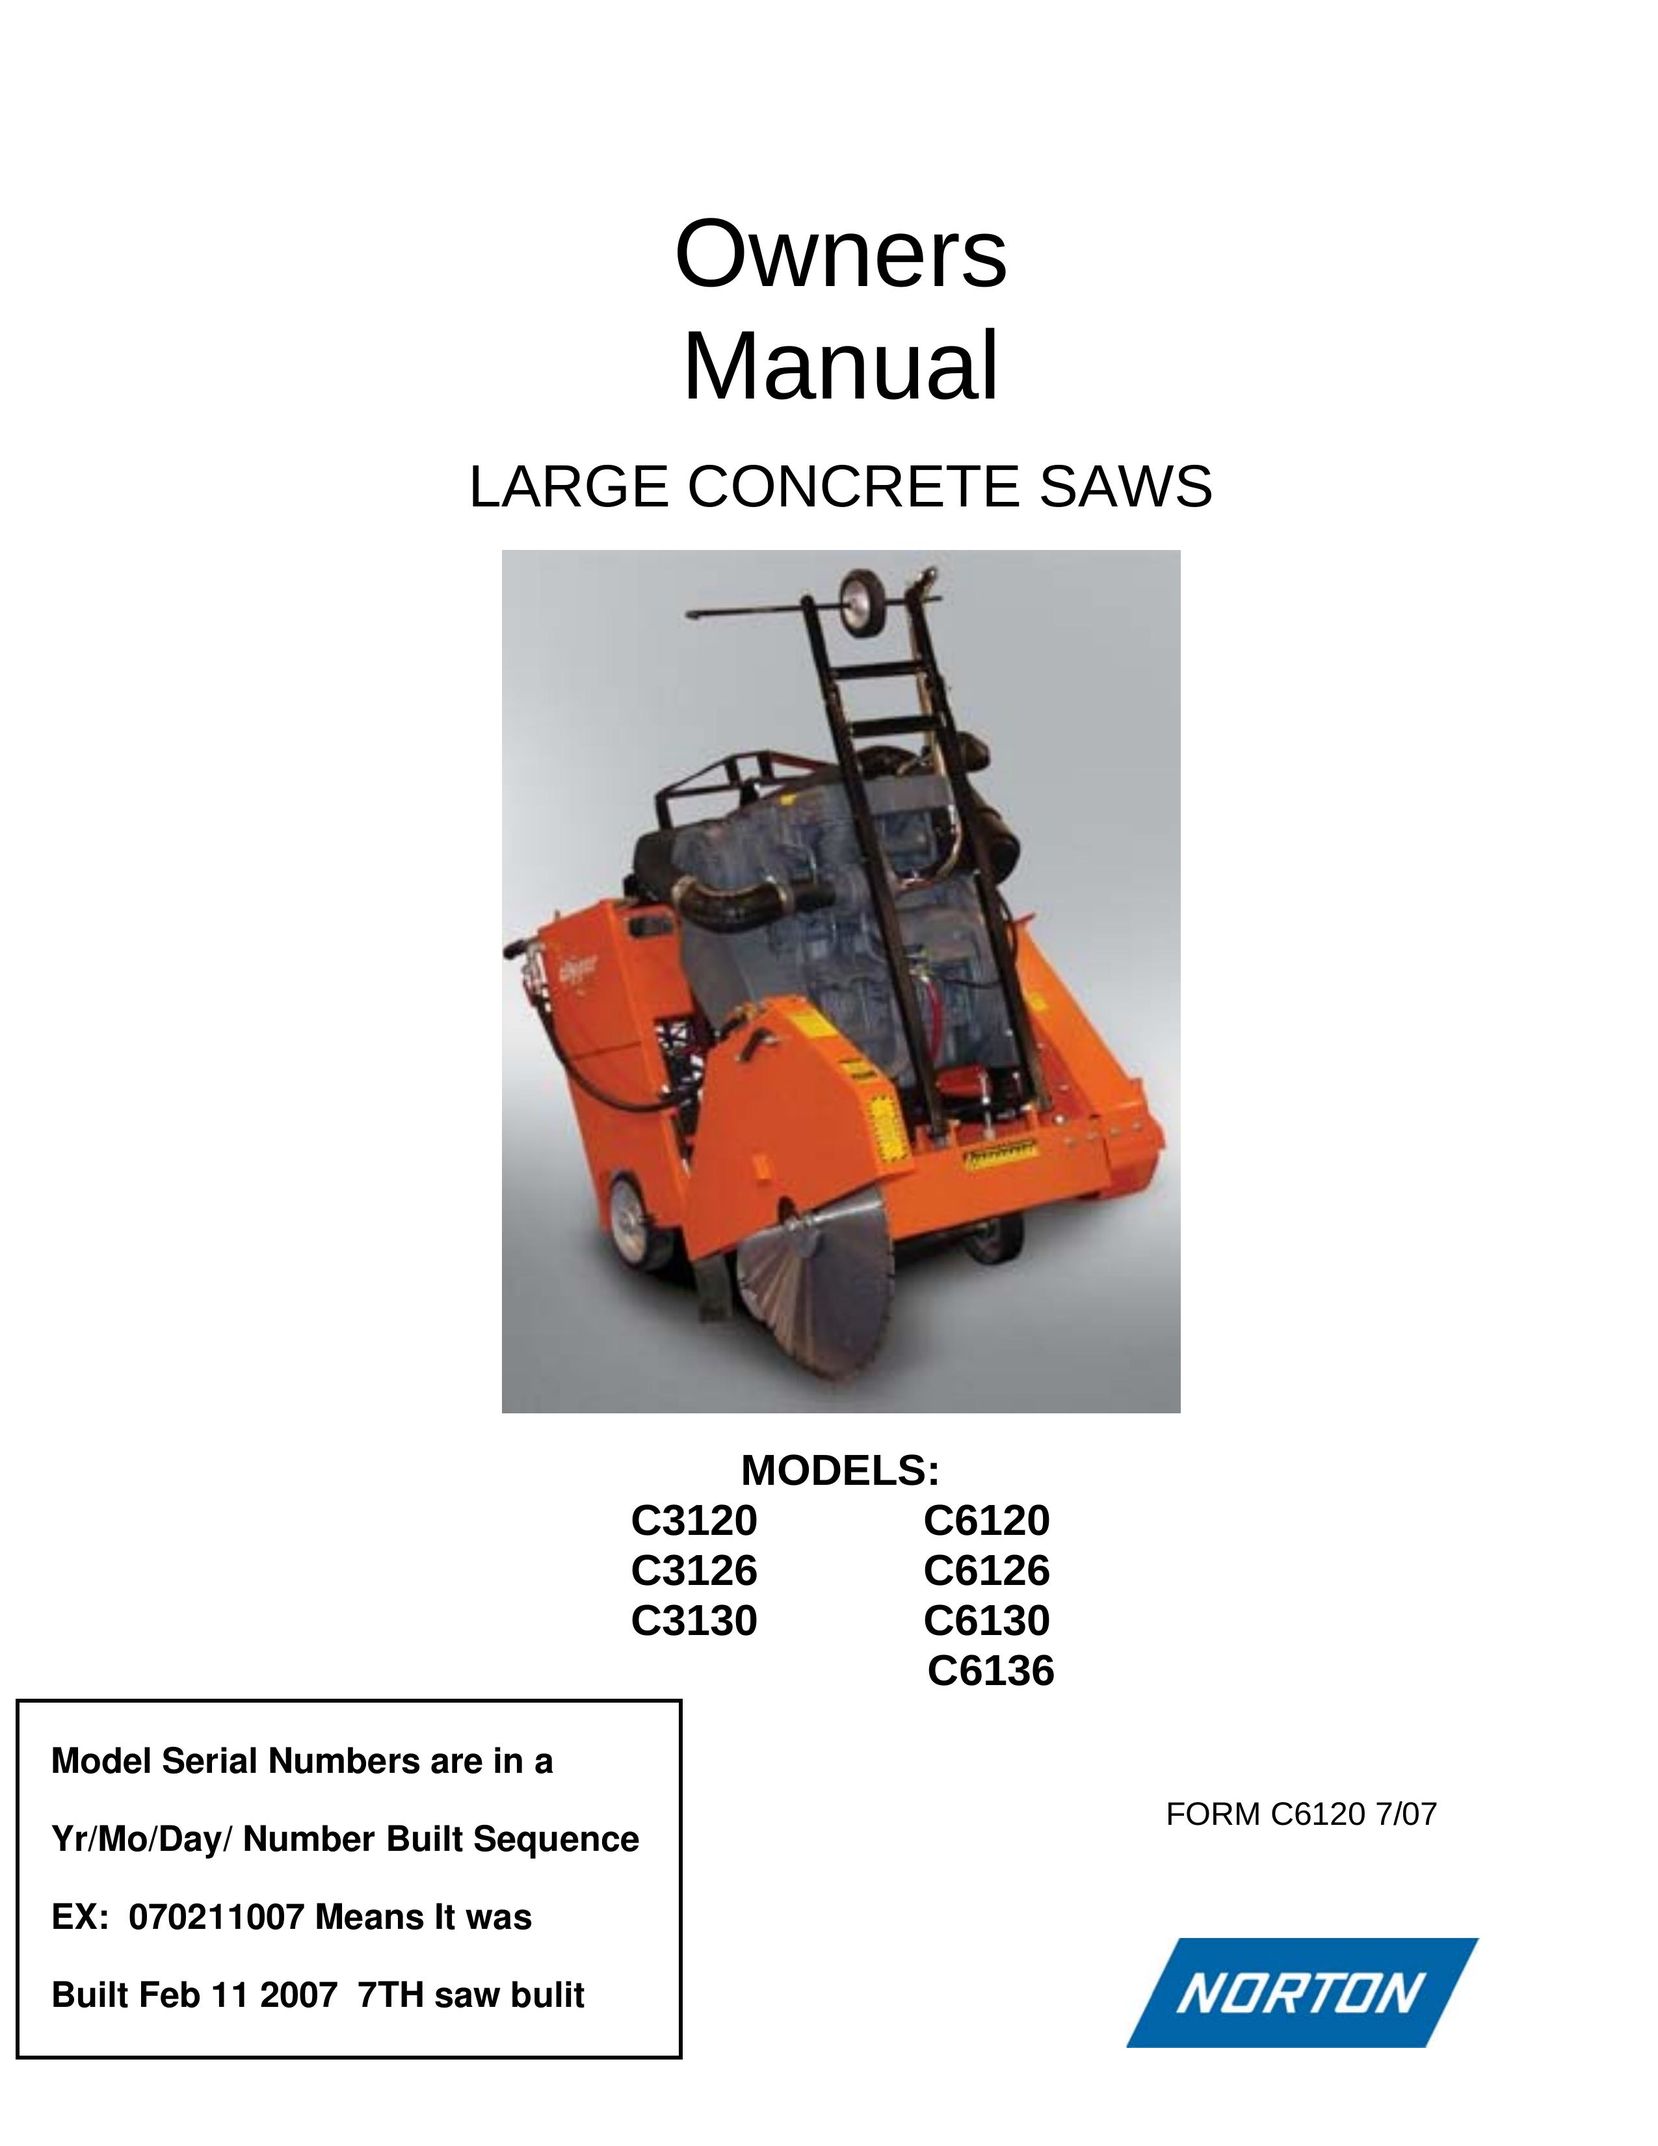 Norton Abrasives C6130 Saw User Manual